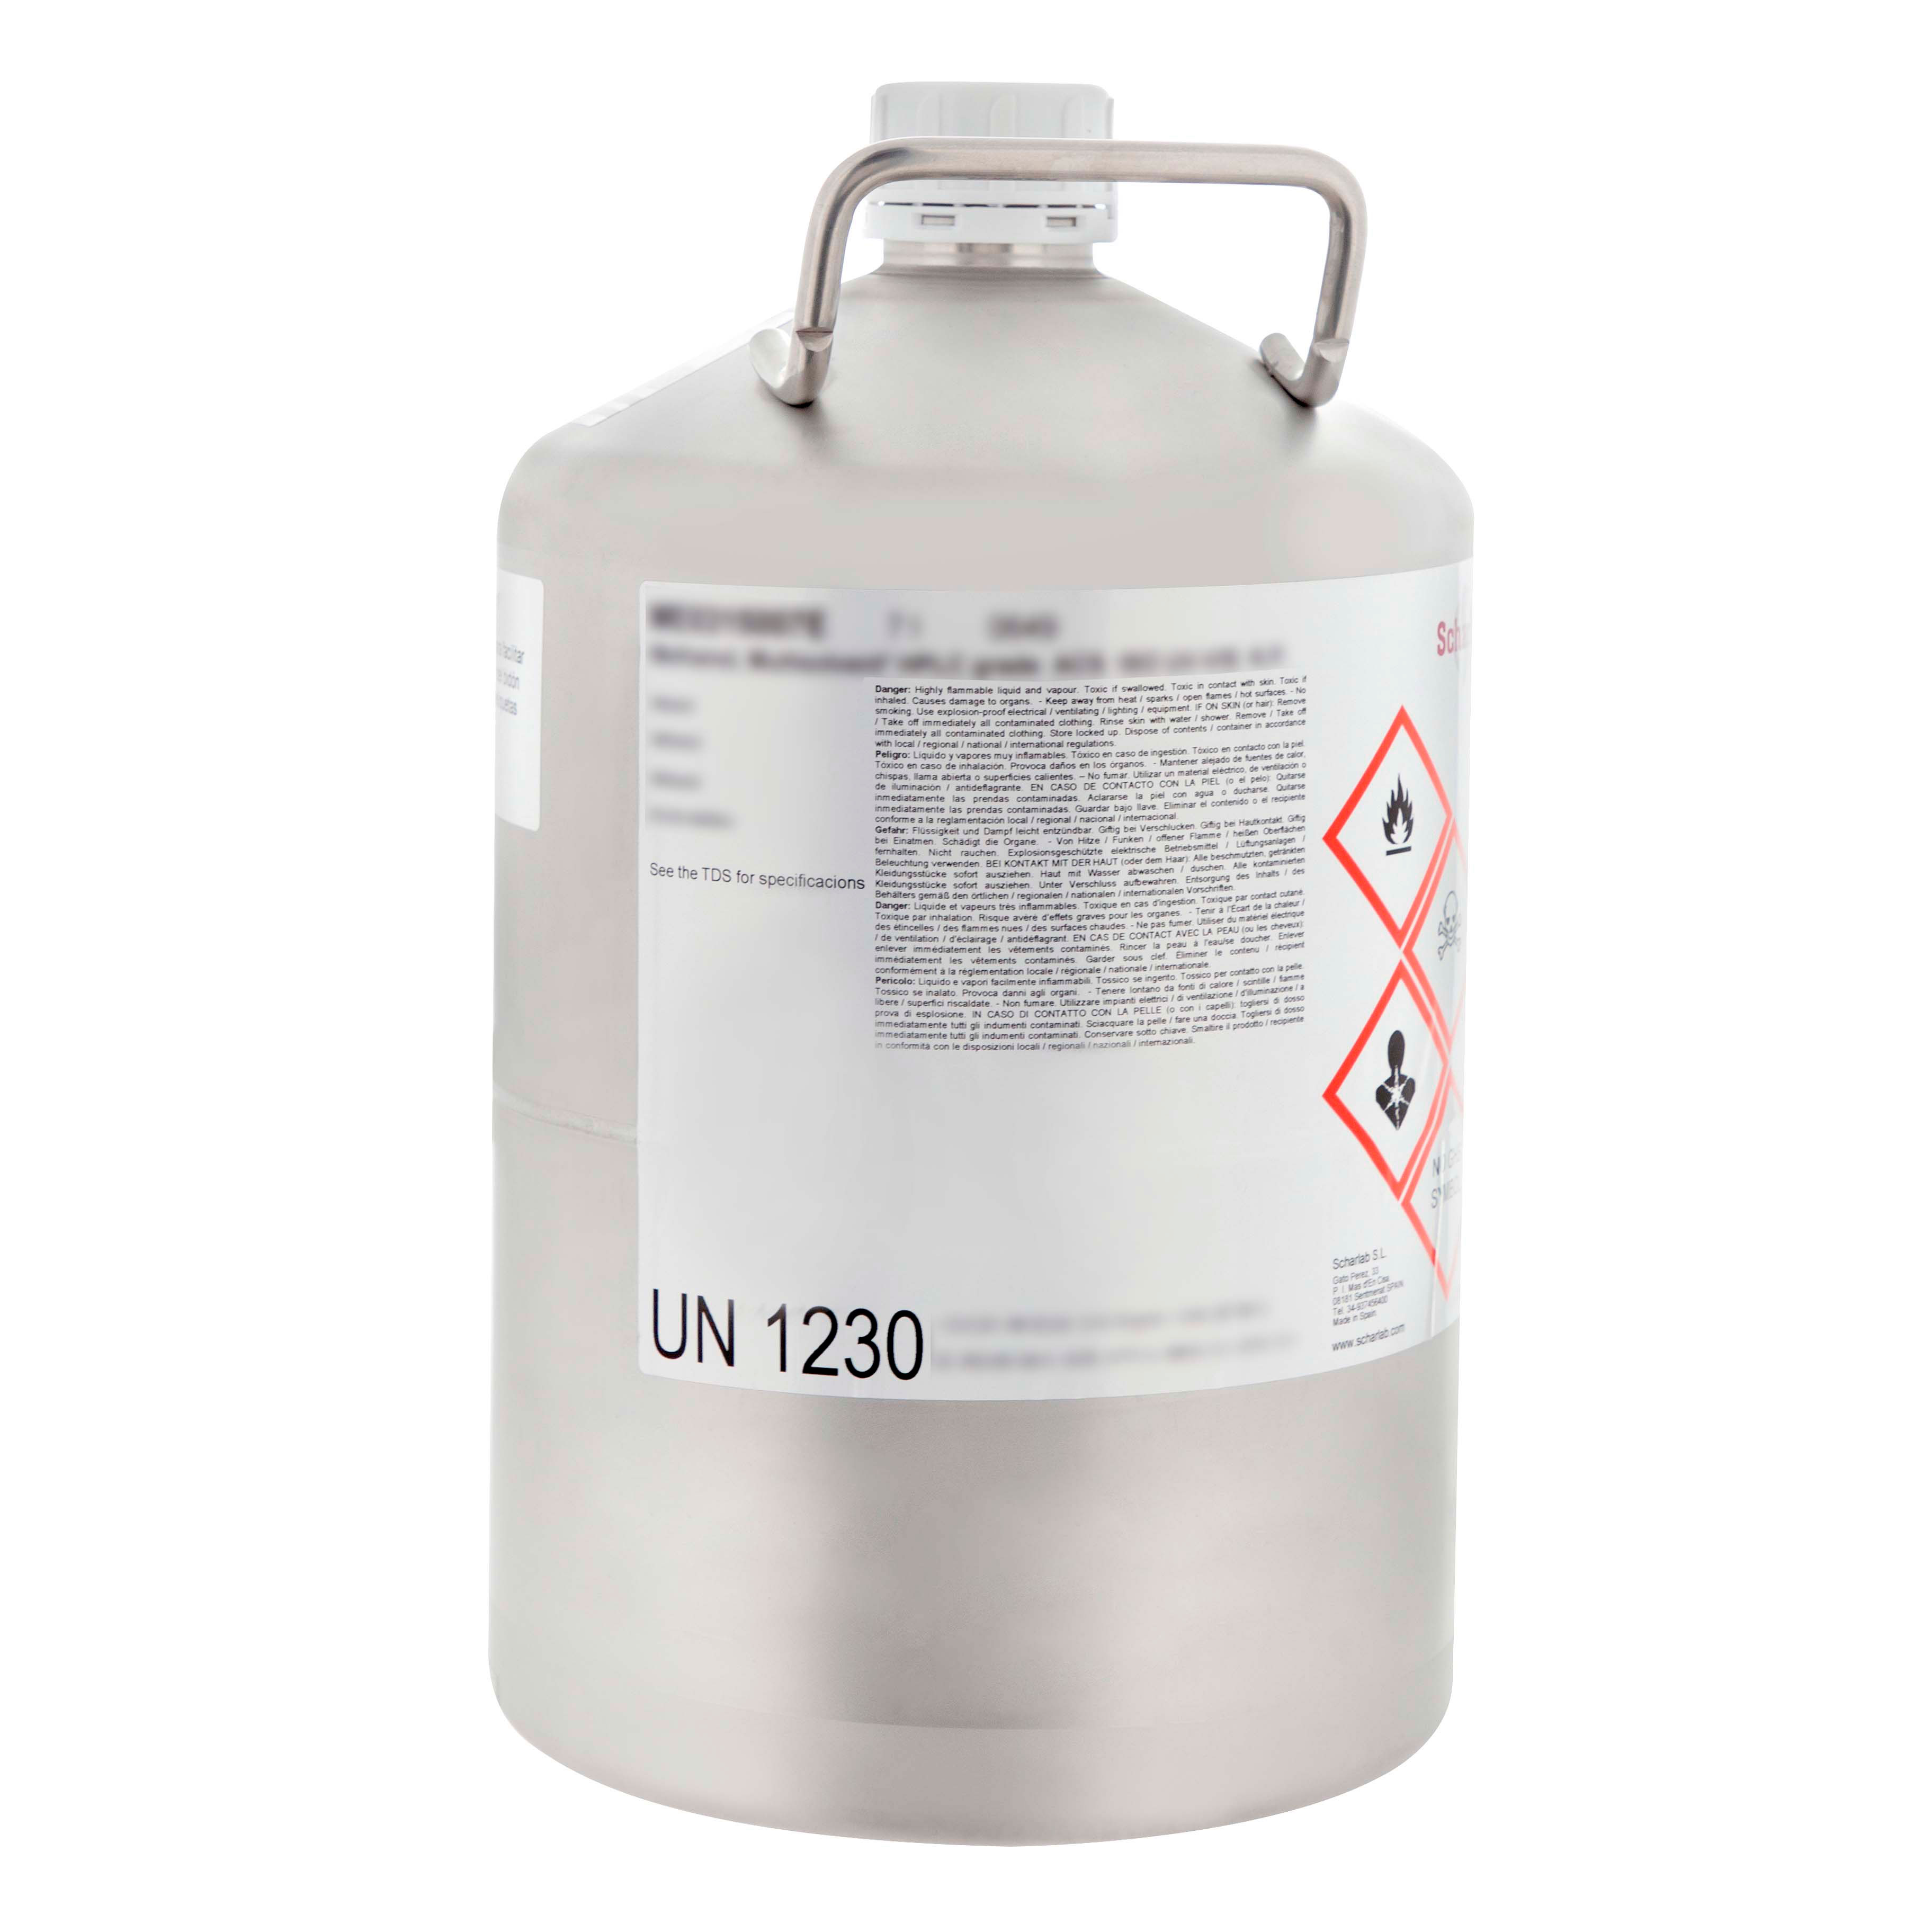 Éter de petróleo, intervalo de ebullición 40 - 60 °C, Multisolvent®, para HPLC  ACS  ISO  UV-VIS, Bencina de petróleo